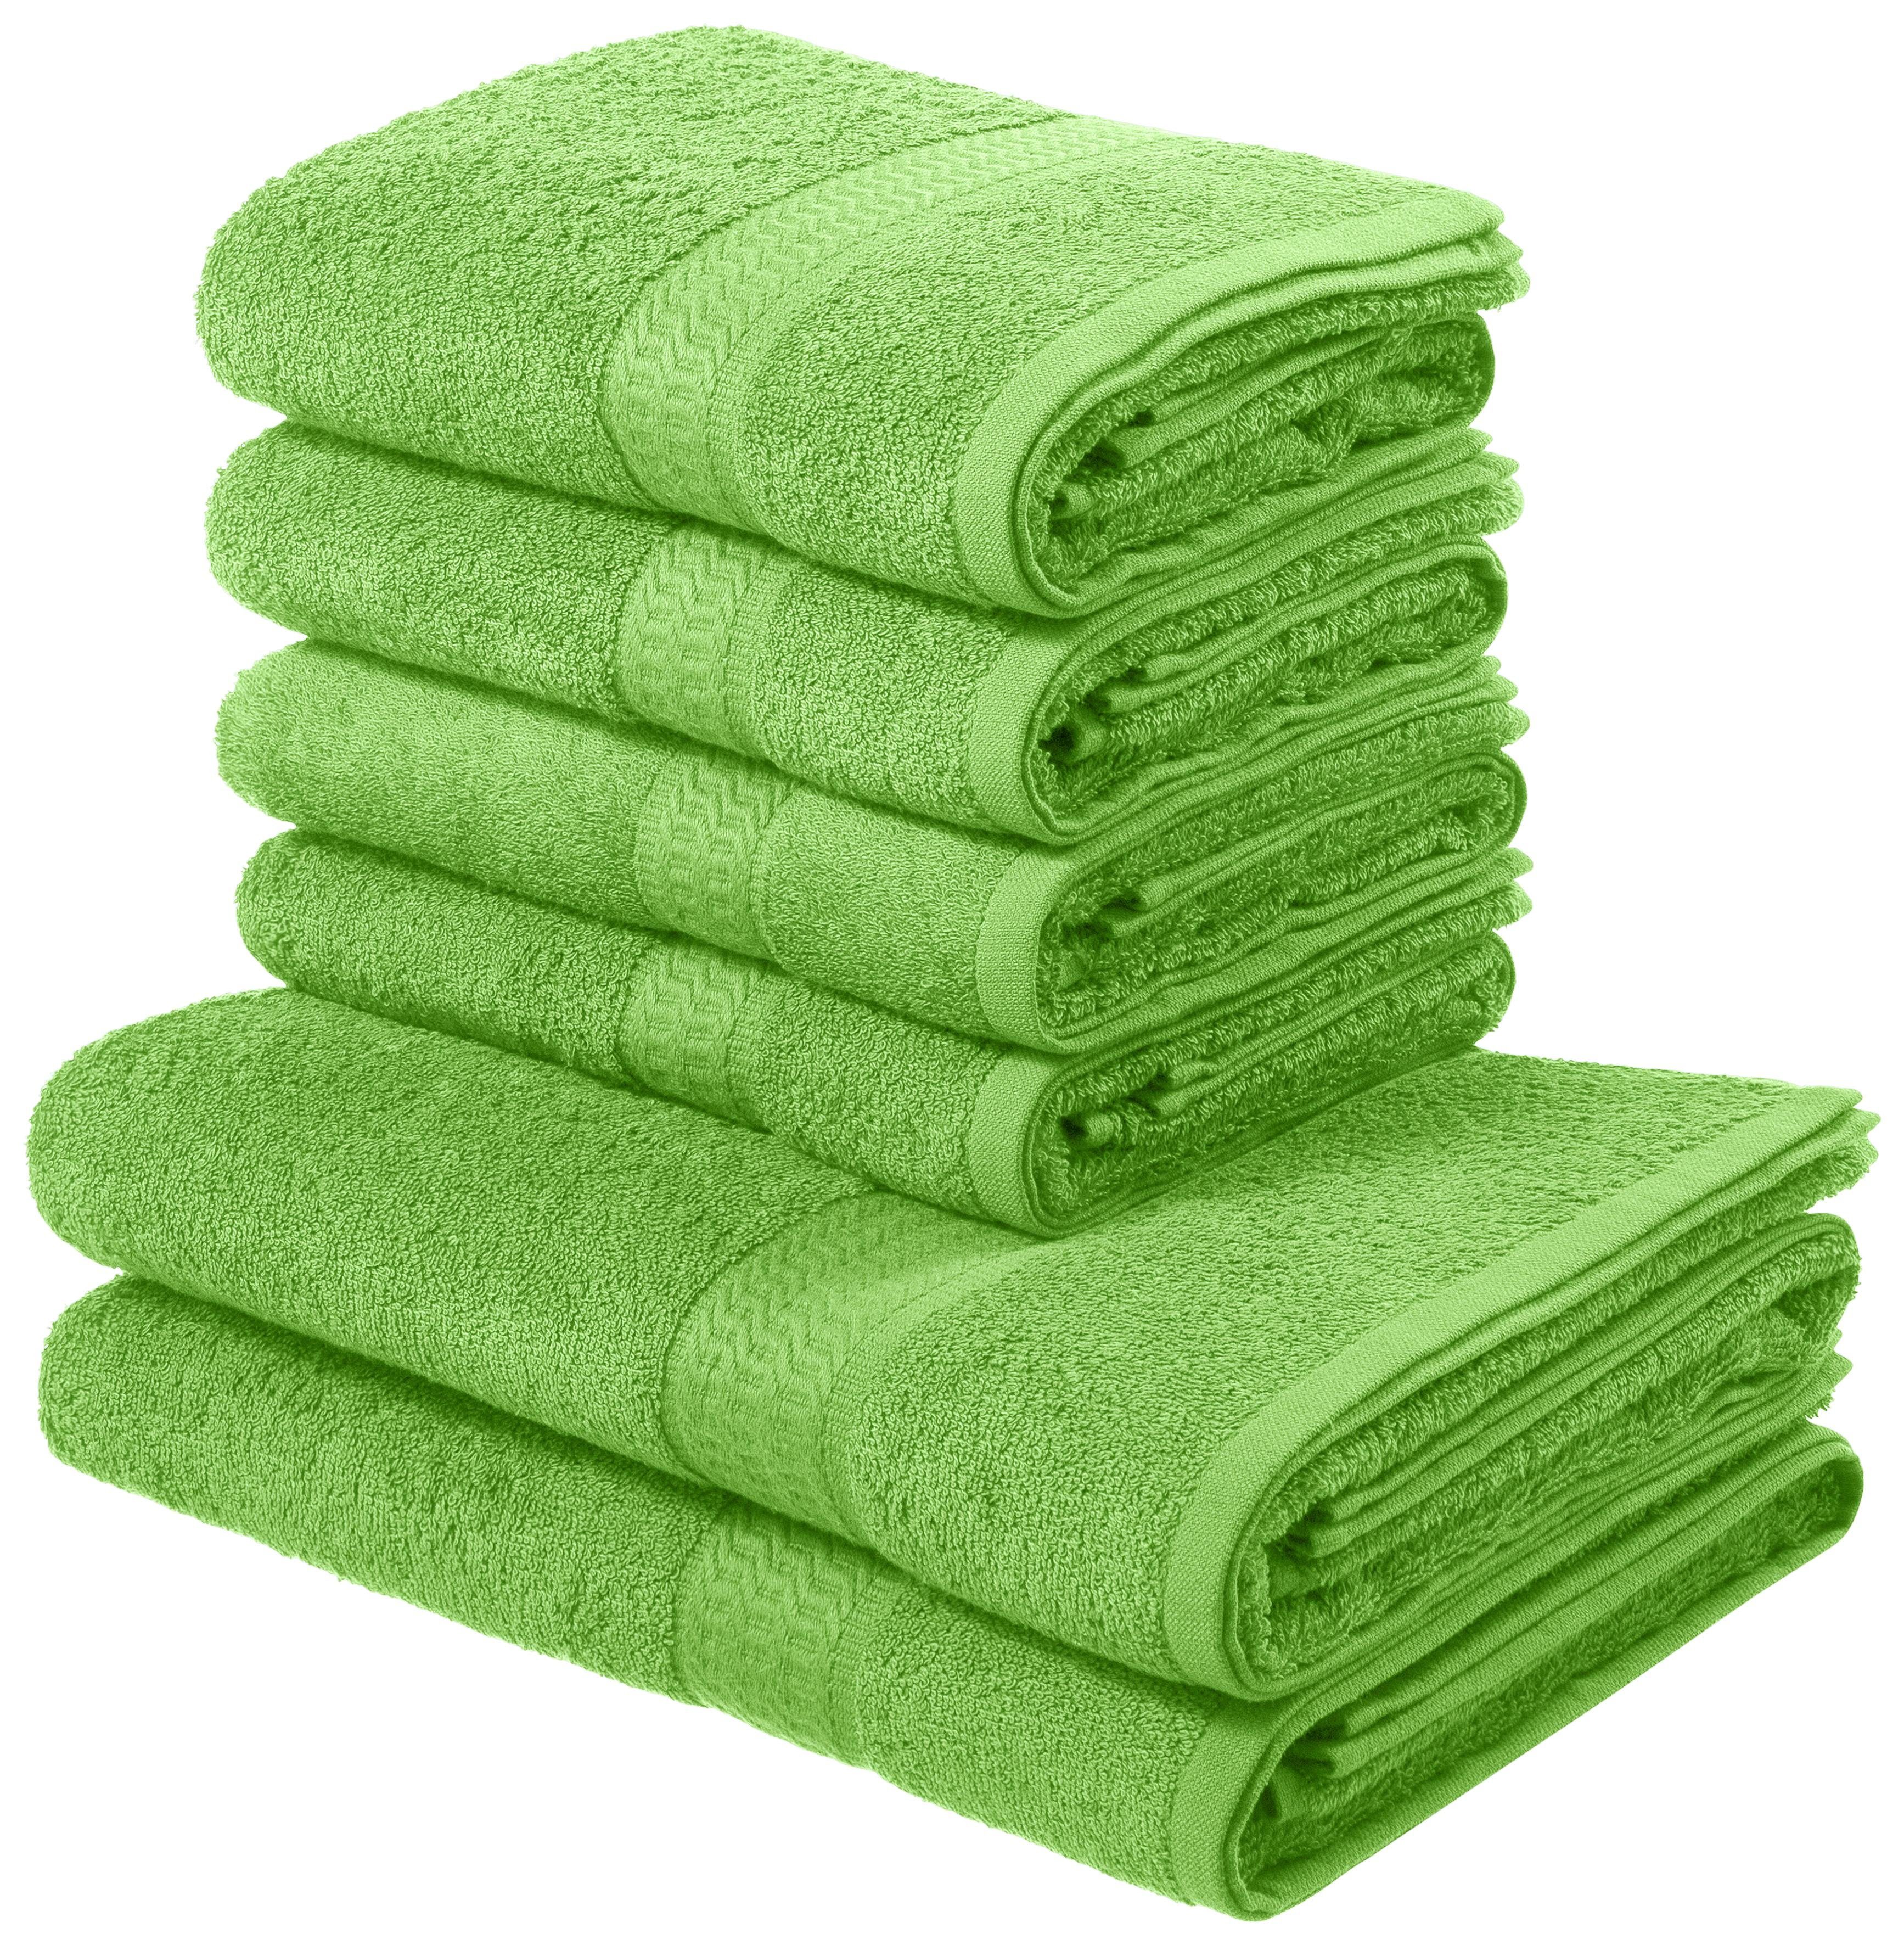 Handtuch-Set in grün online kaufen | OTTO